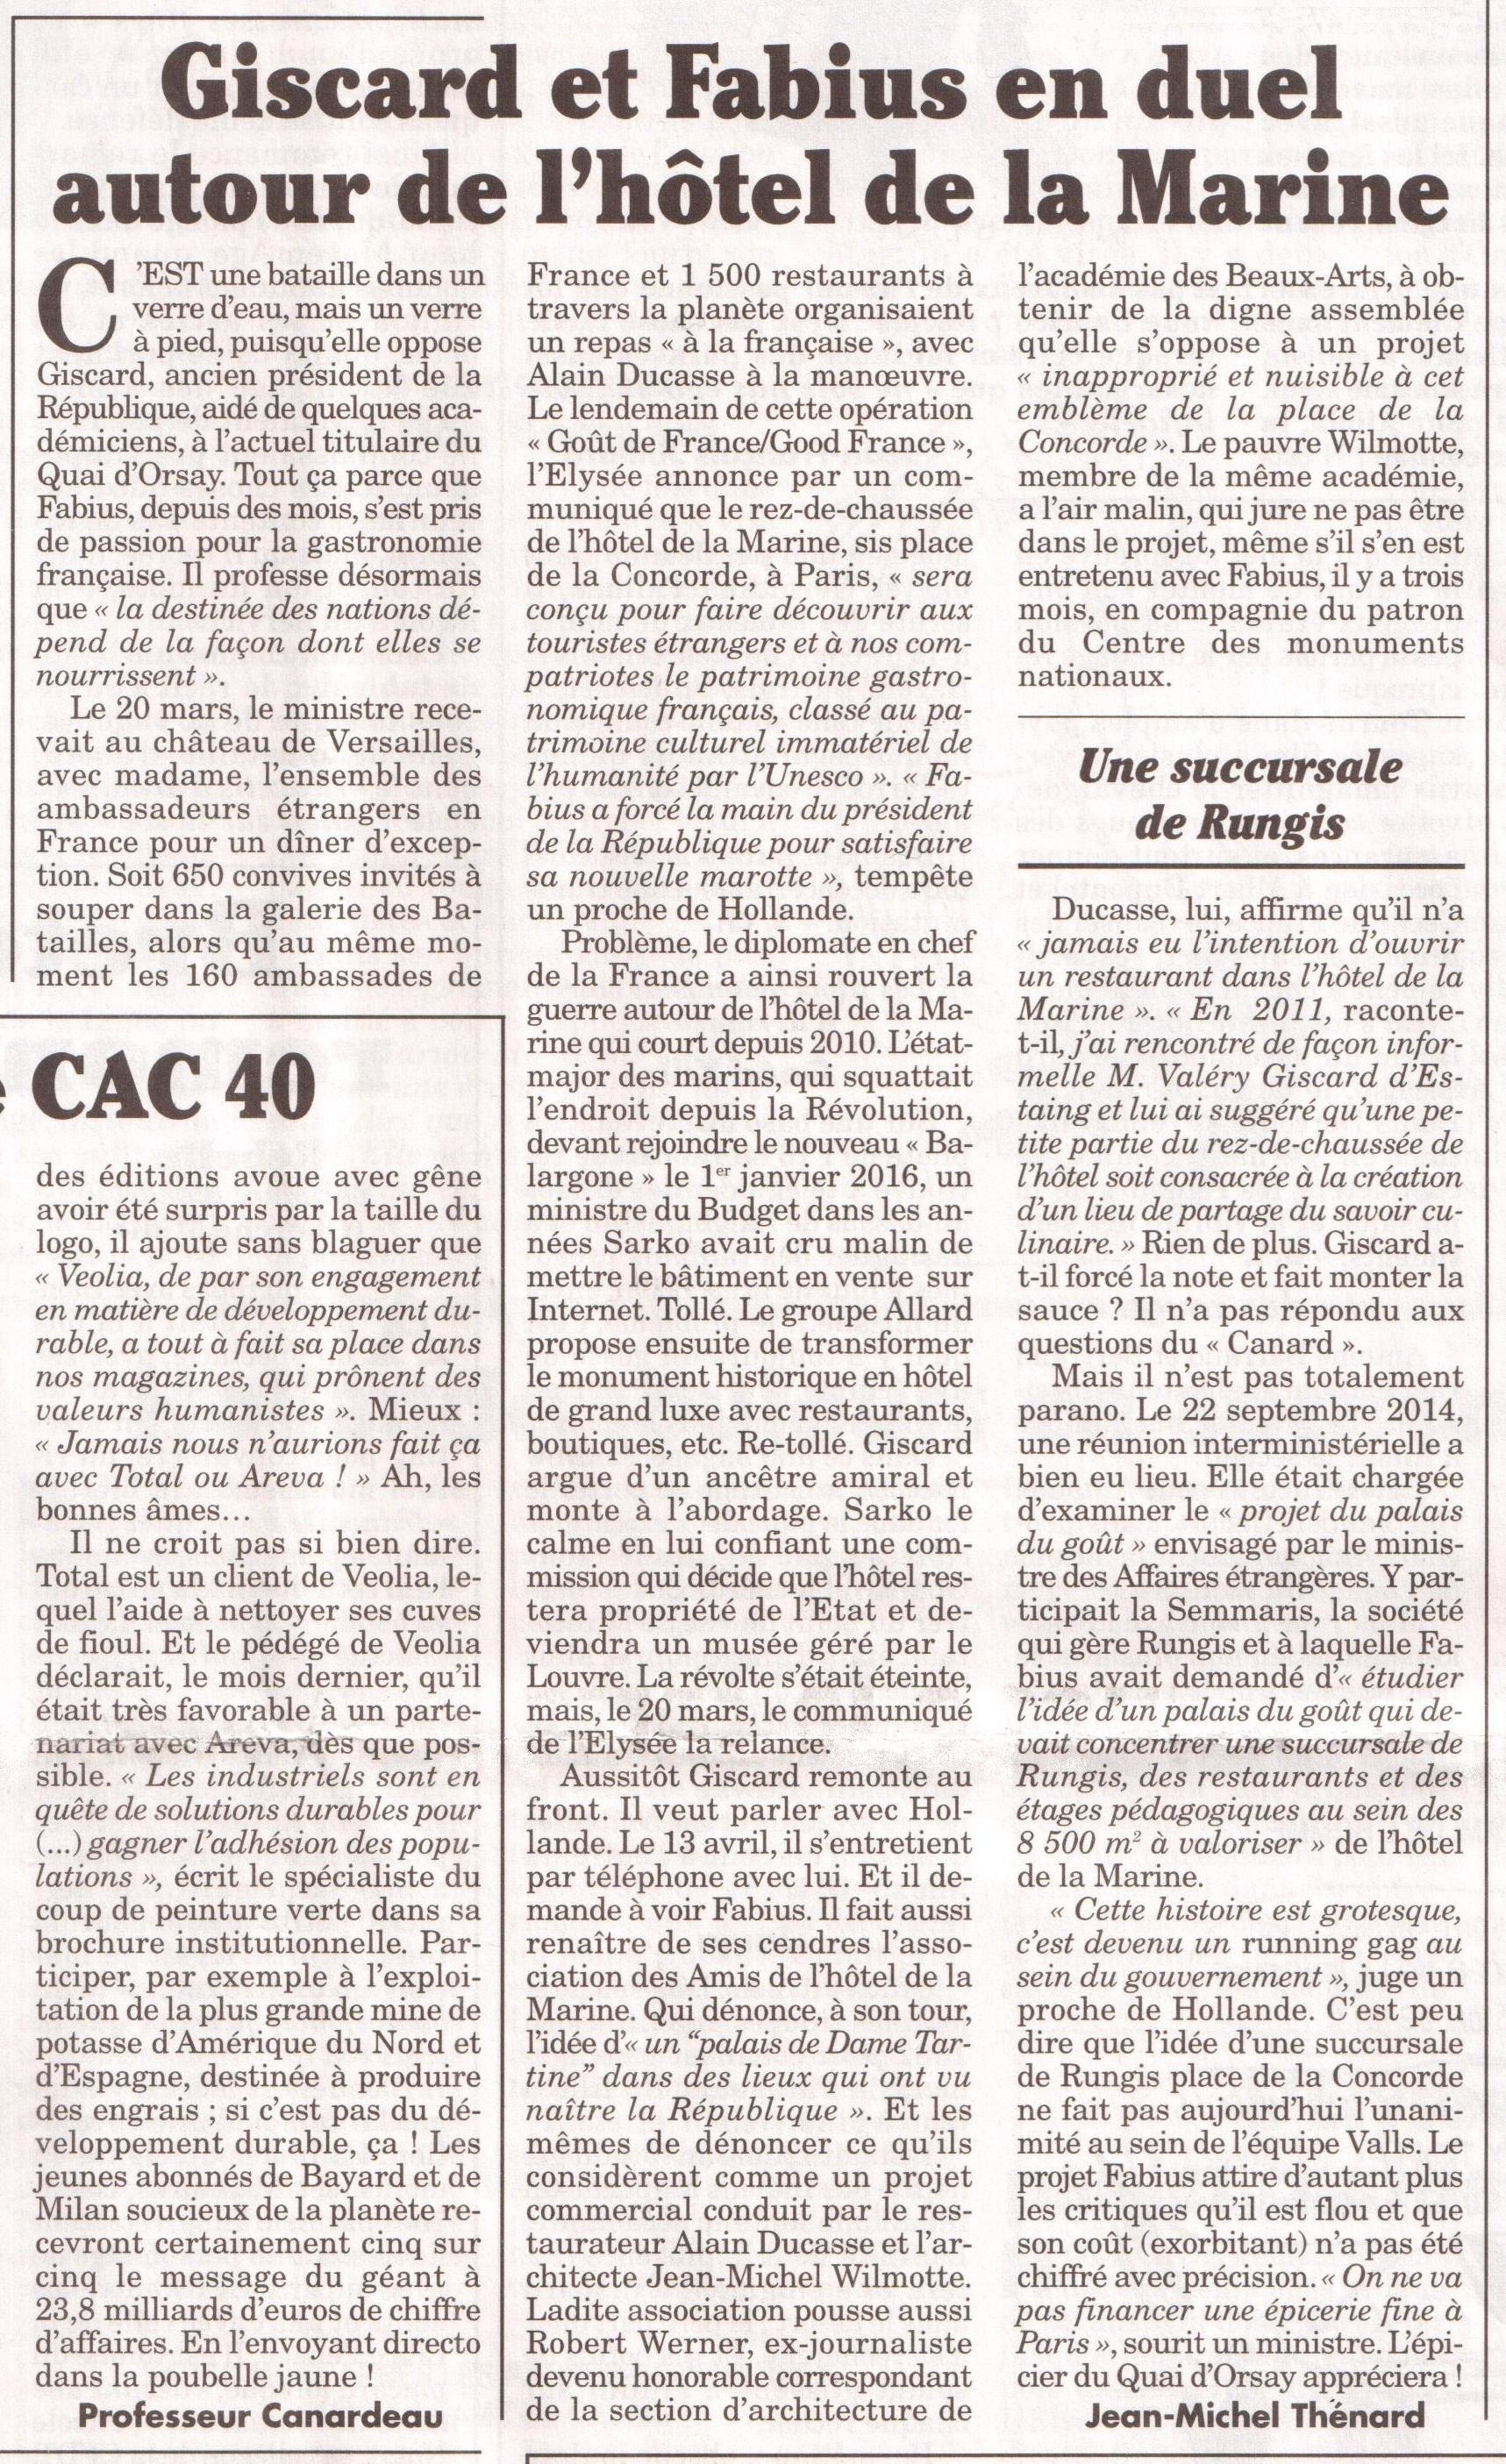 Le Canard enchaîné n° 4930 du 22 avril 2015, p. 5